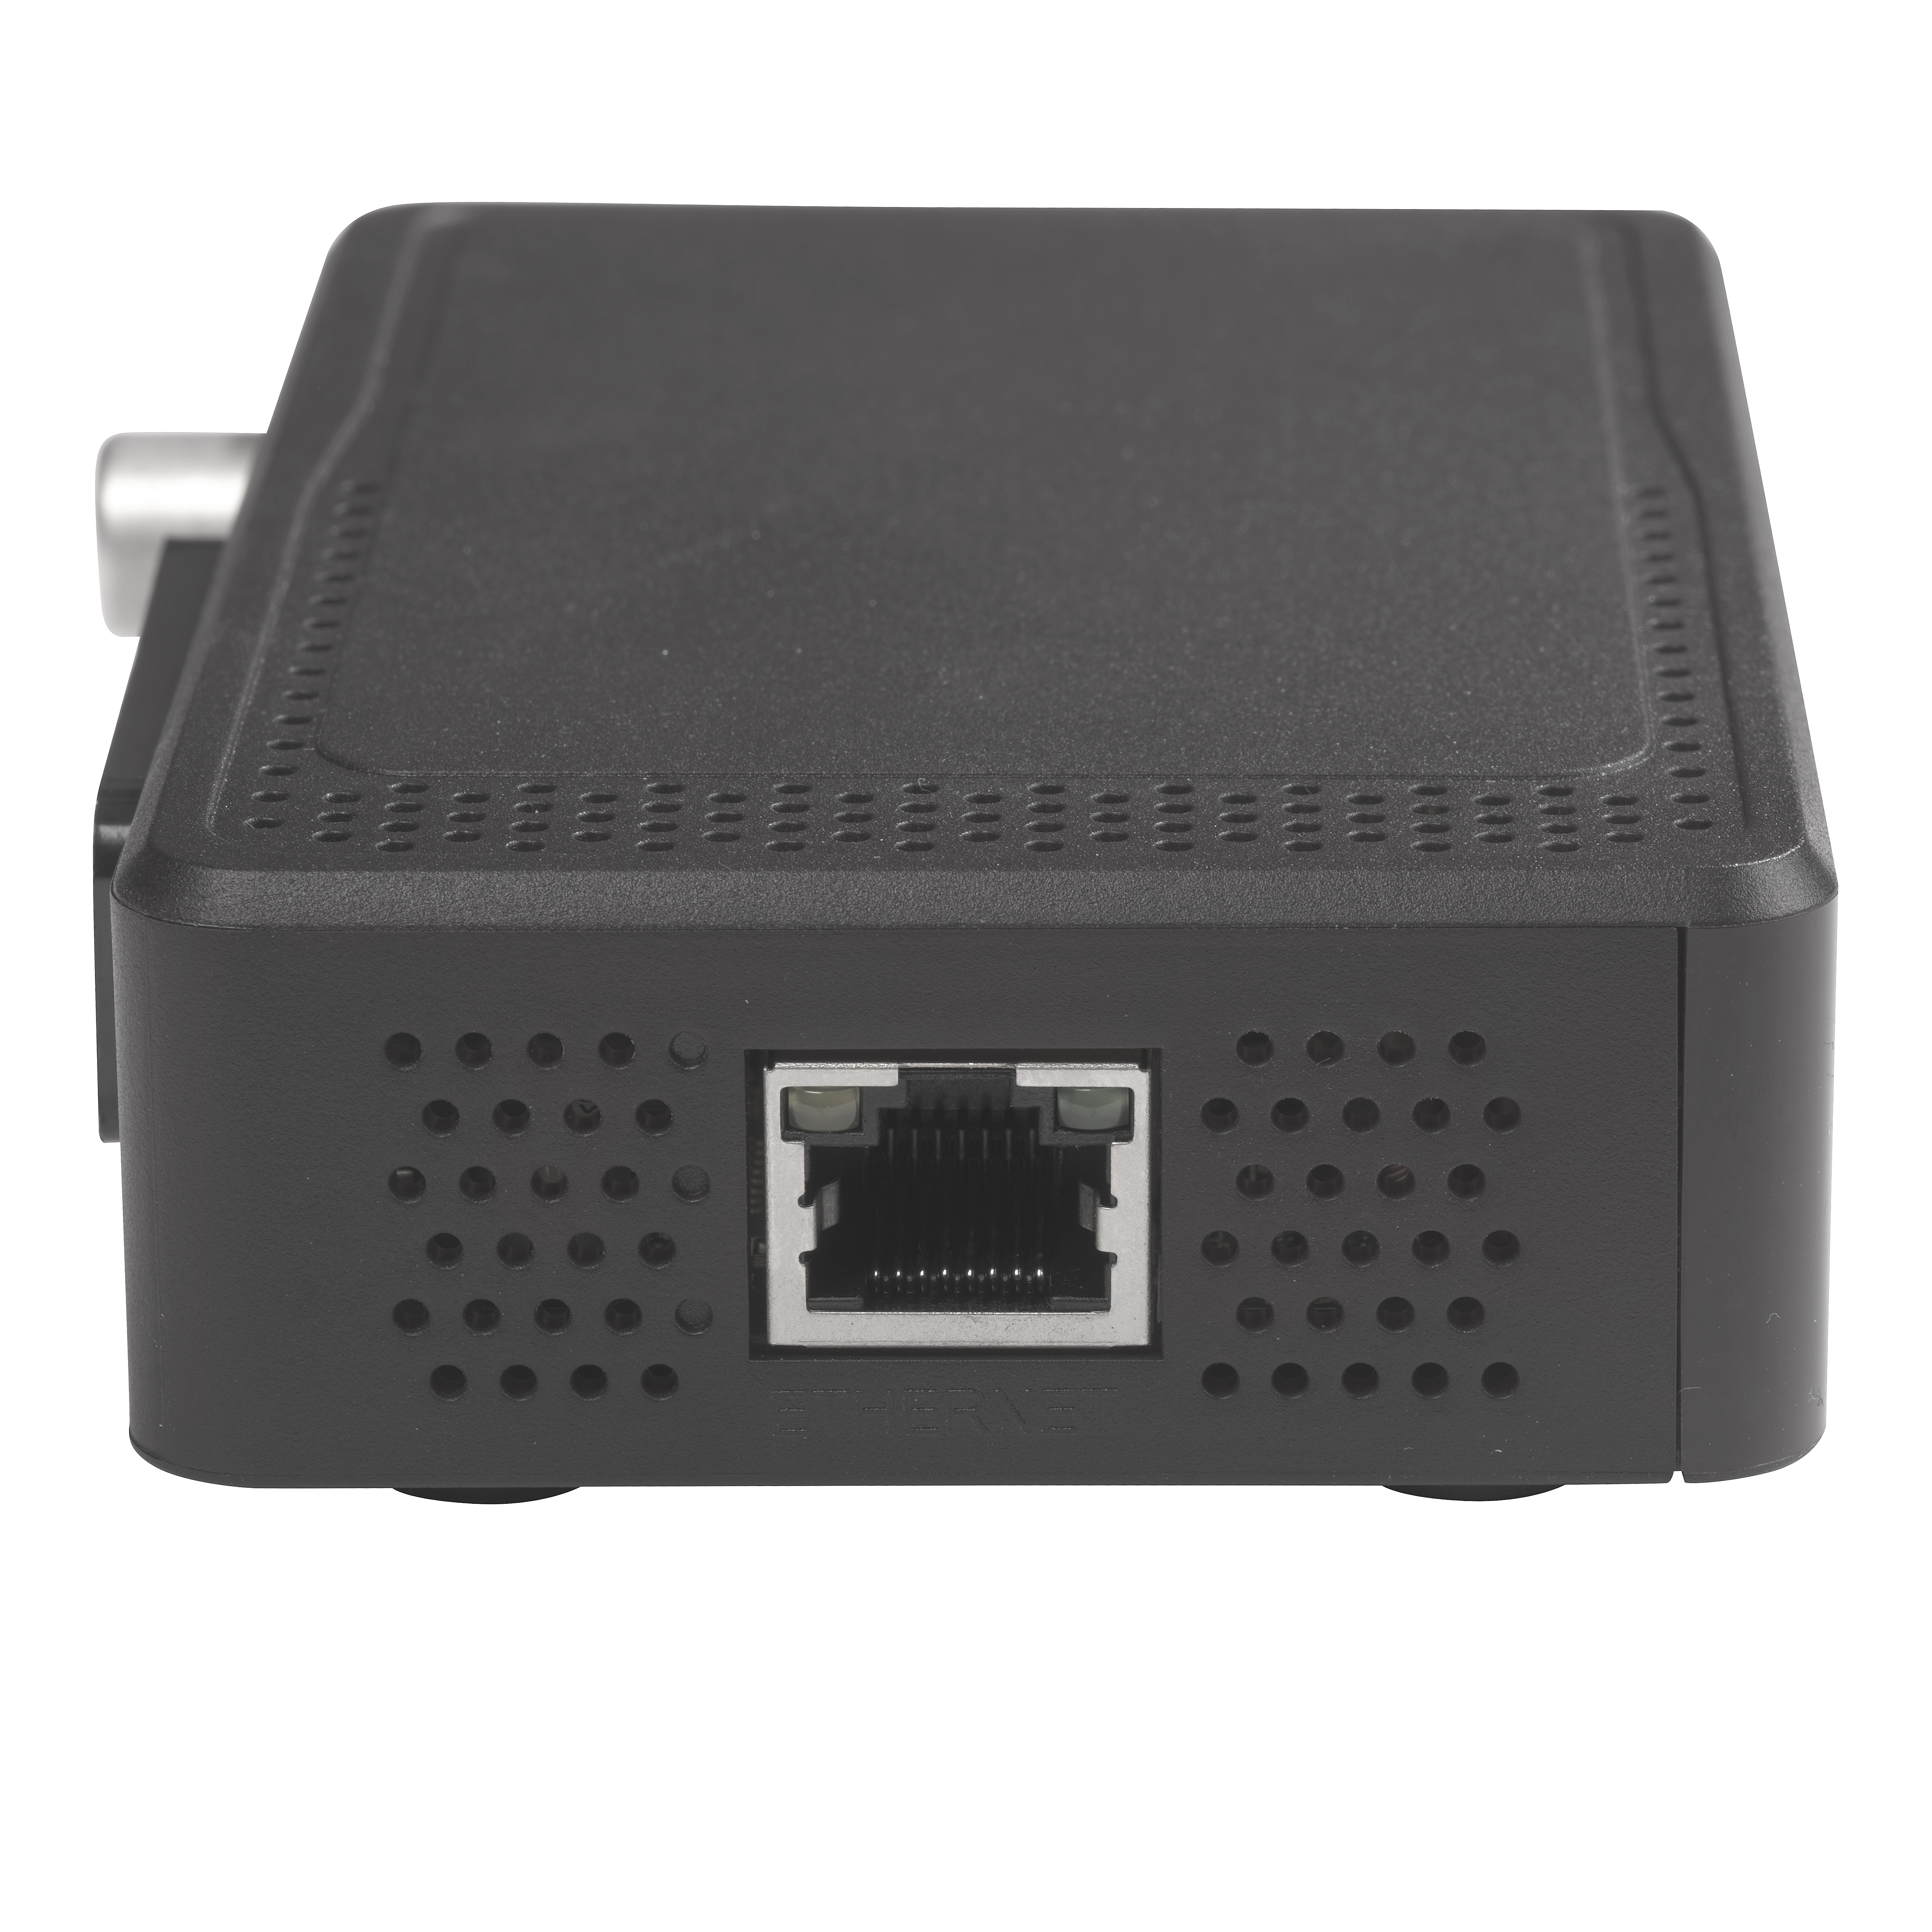 ethernet LAN Alta definizione USB RF in. Connessioni: HMDI Telecomando coaxial Ricevitore digitale terrestre Denver DTB-145 Decoder DVB-T2 H.265 Scart 